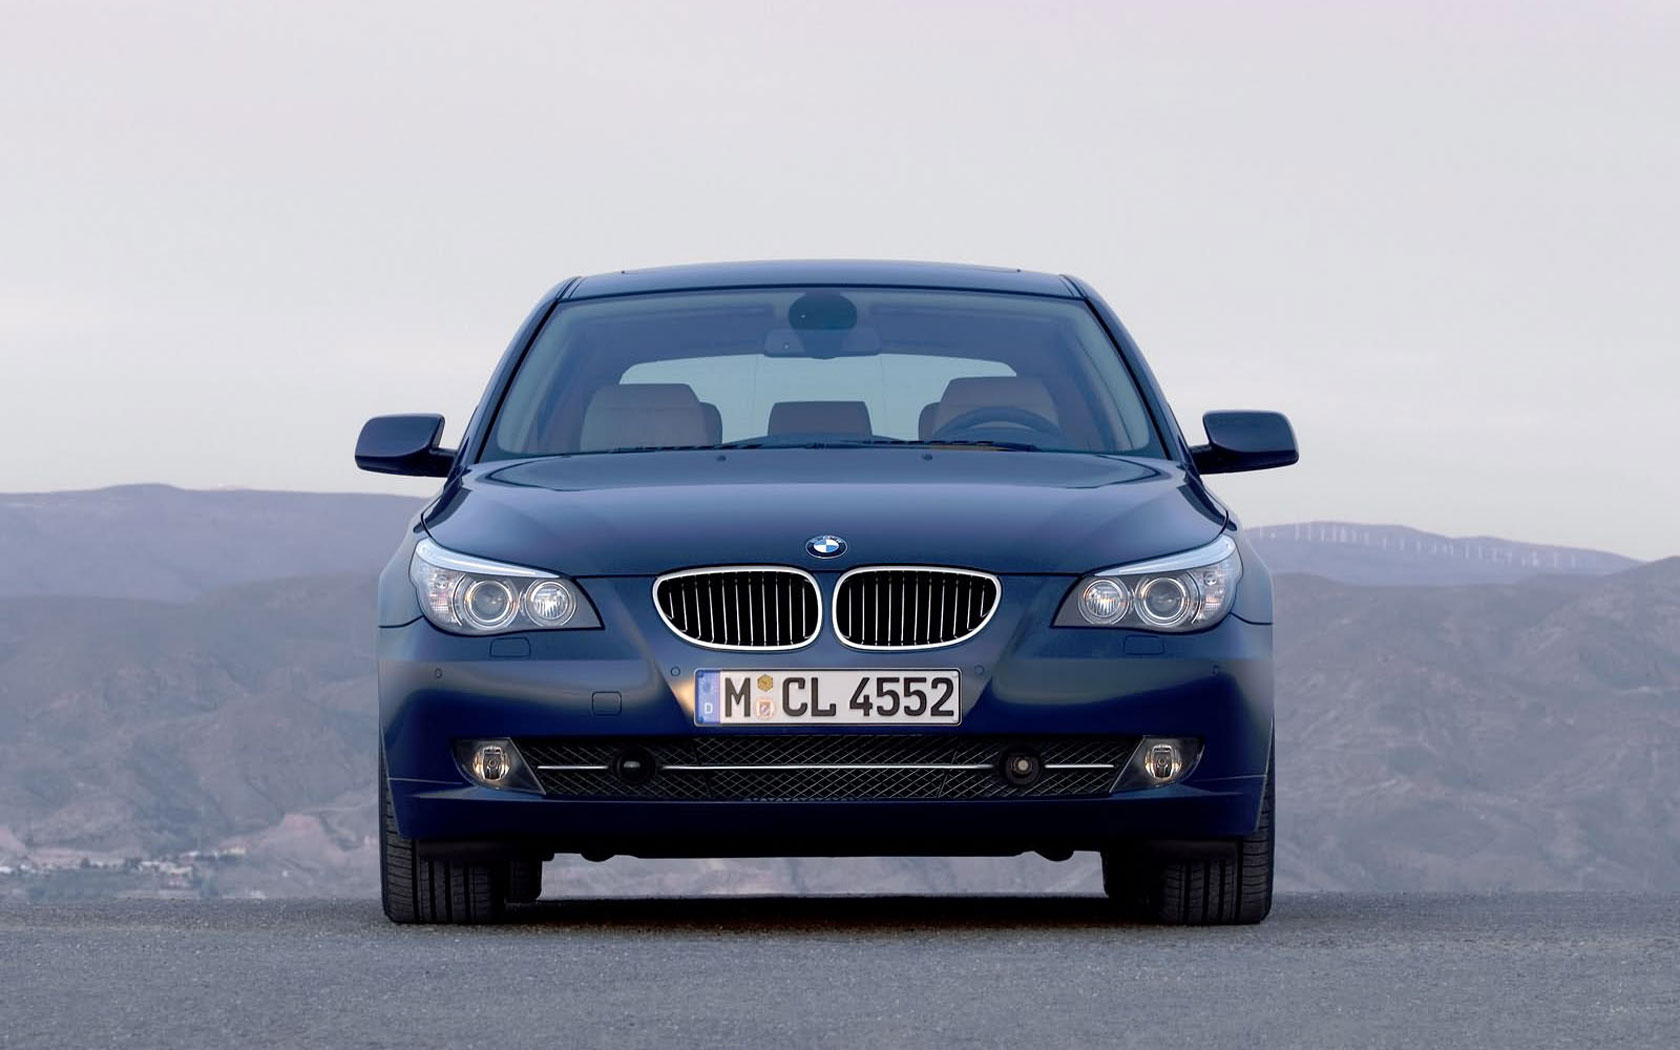  BMW 5-series Touring (2007-2010)